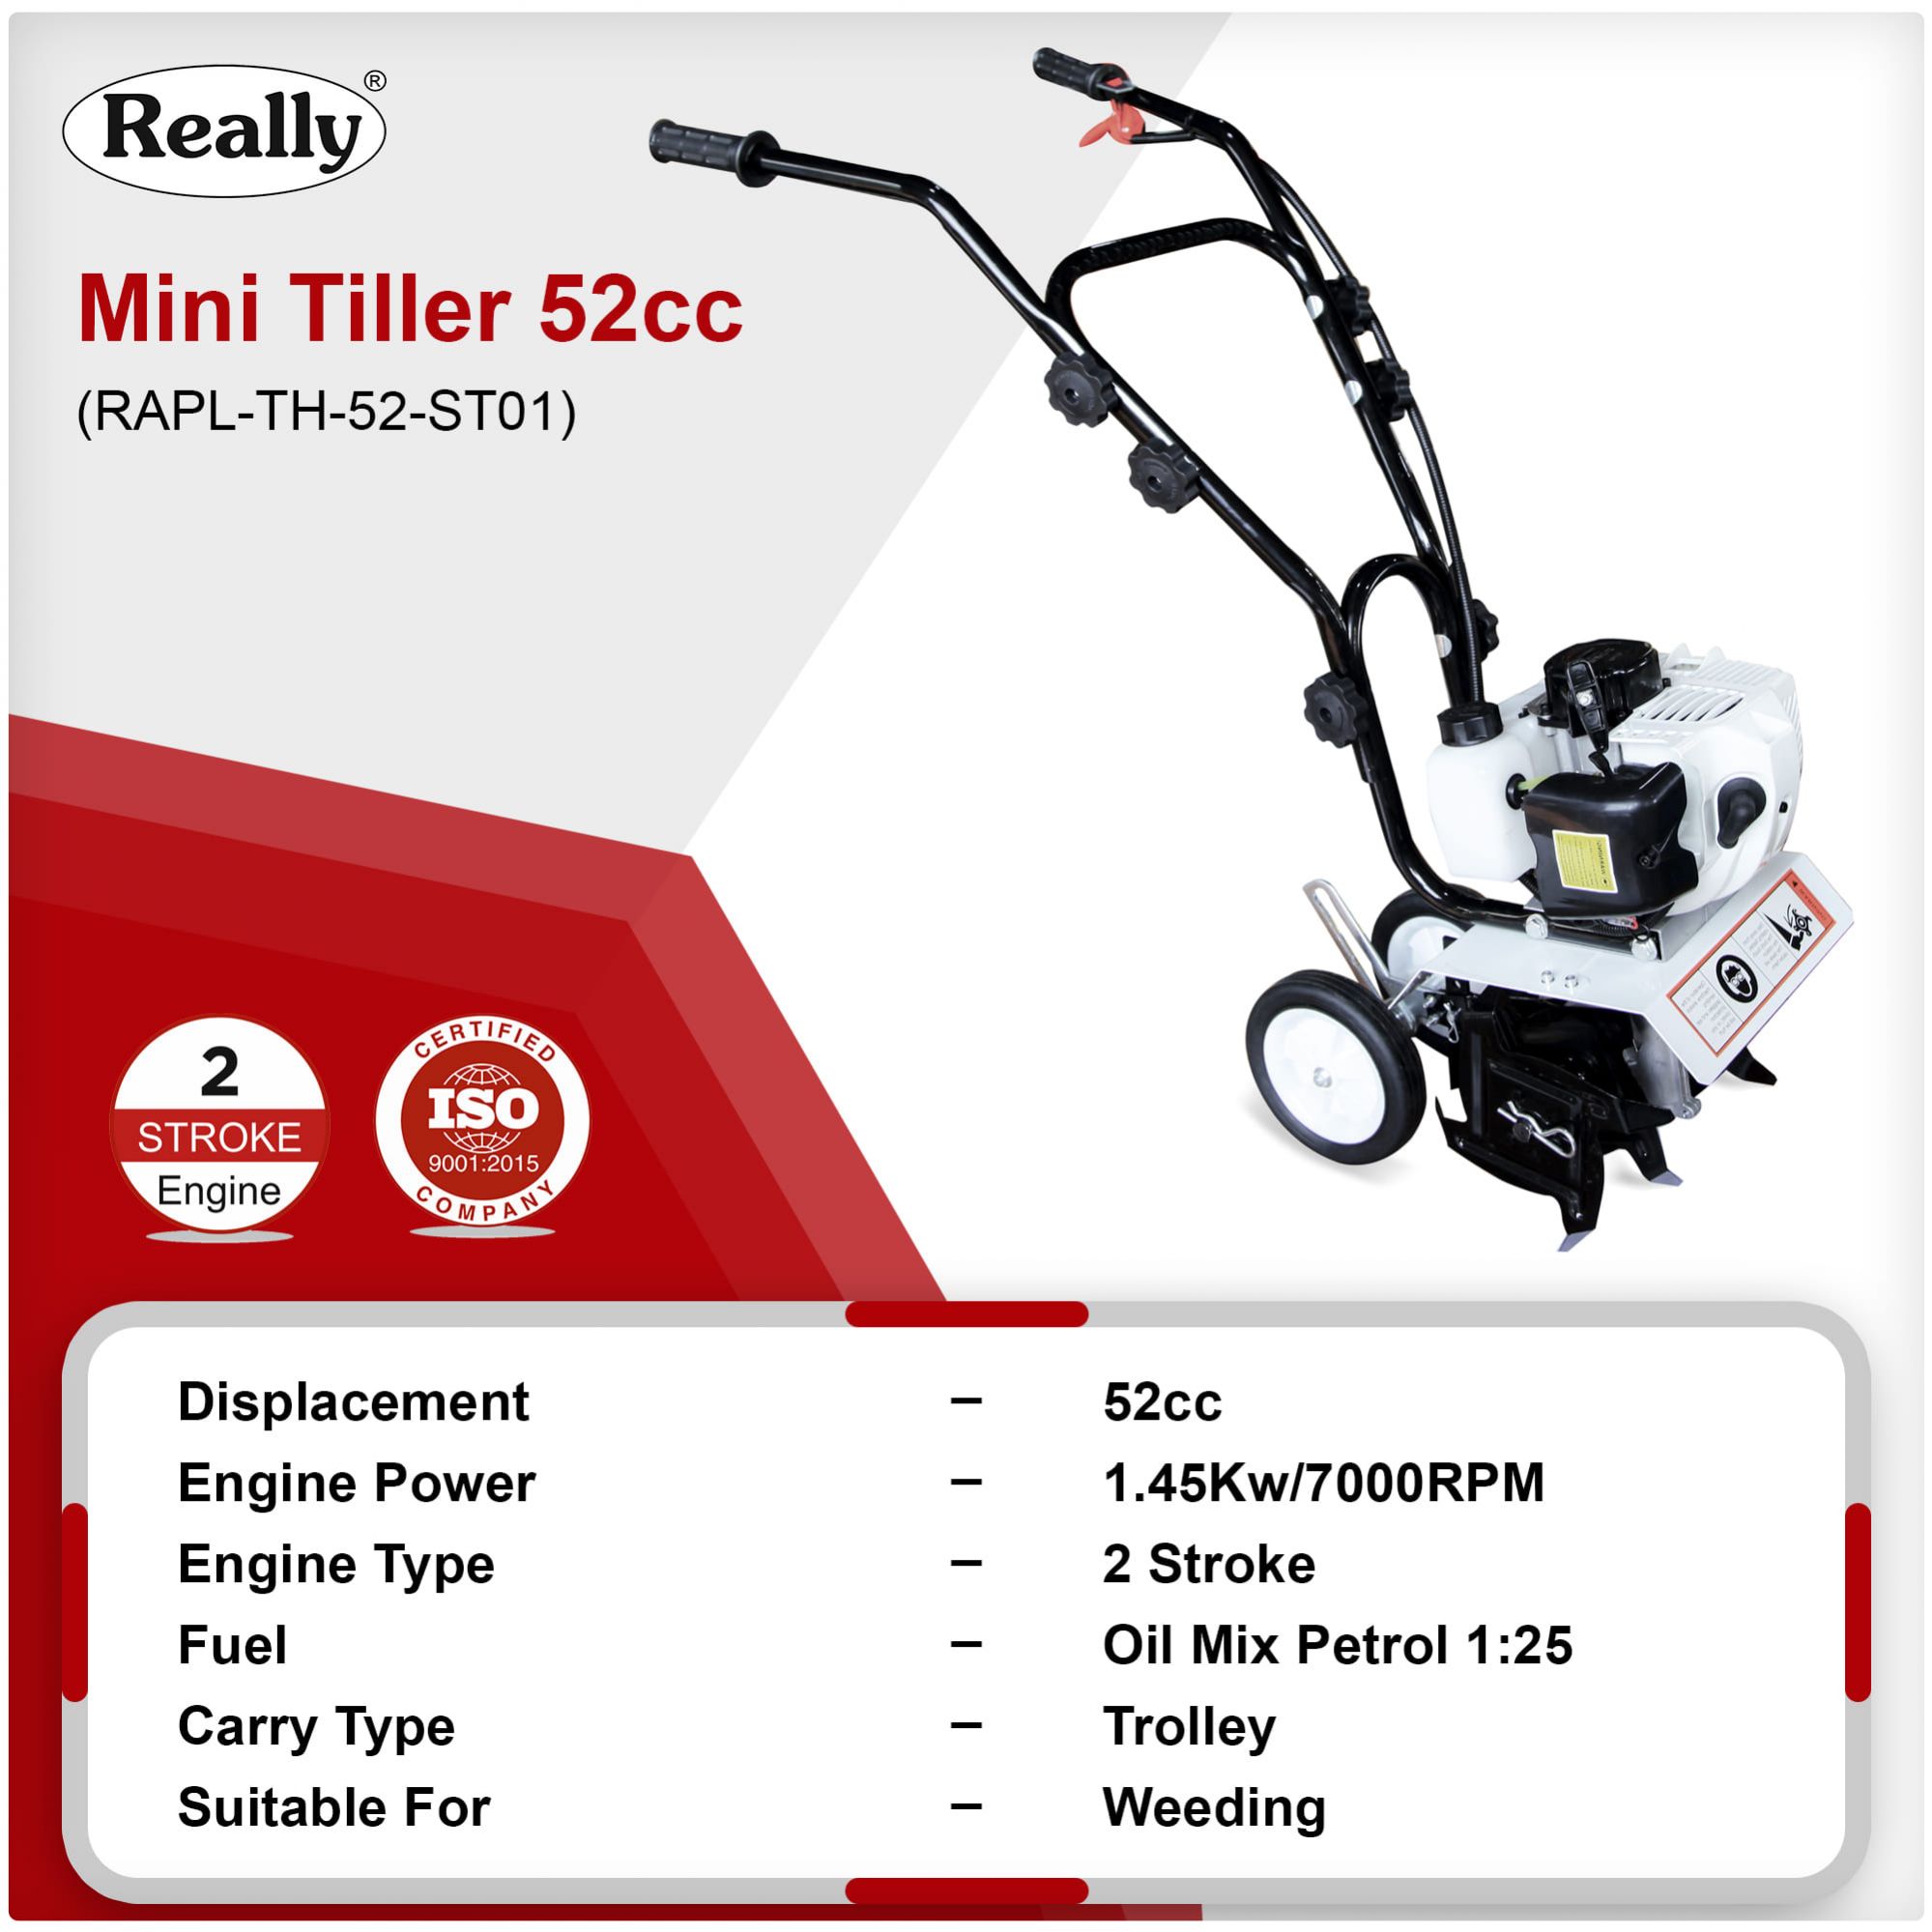 Really Mini Tiller 52cc 2 Stroke (RAPL-TH-52-ST01)